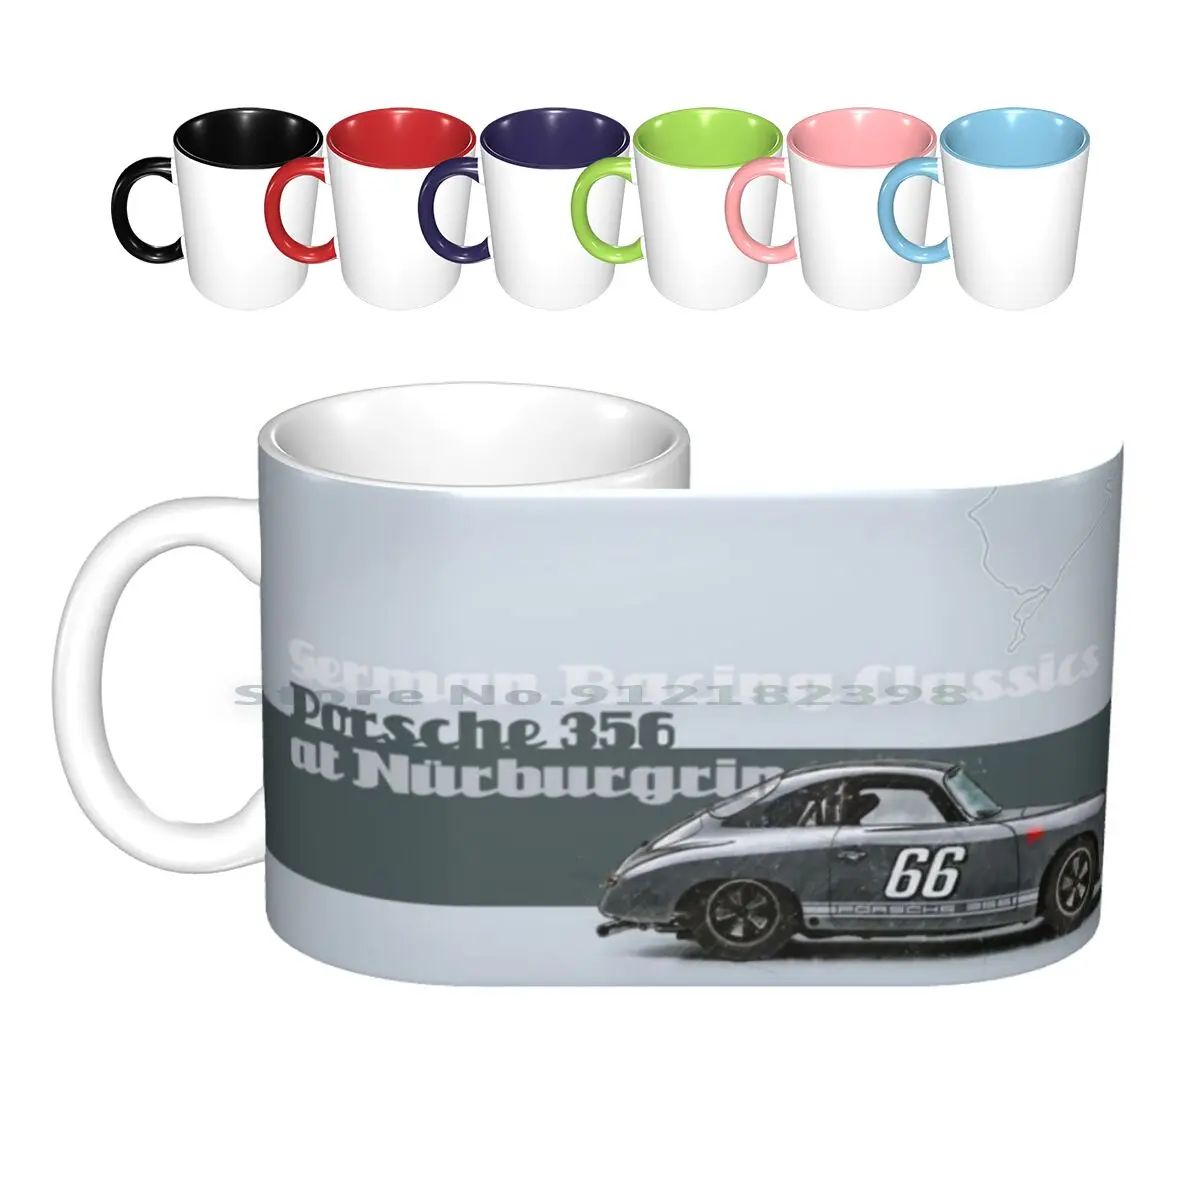 

Керамические кружки в наньюрбурге 356, кофейные чашки, кружка для молока, чая, гоночная трасса, гоночная трасса, гоночный скоростной водитель, бруклэндс монтхери